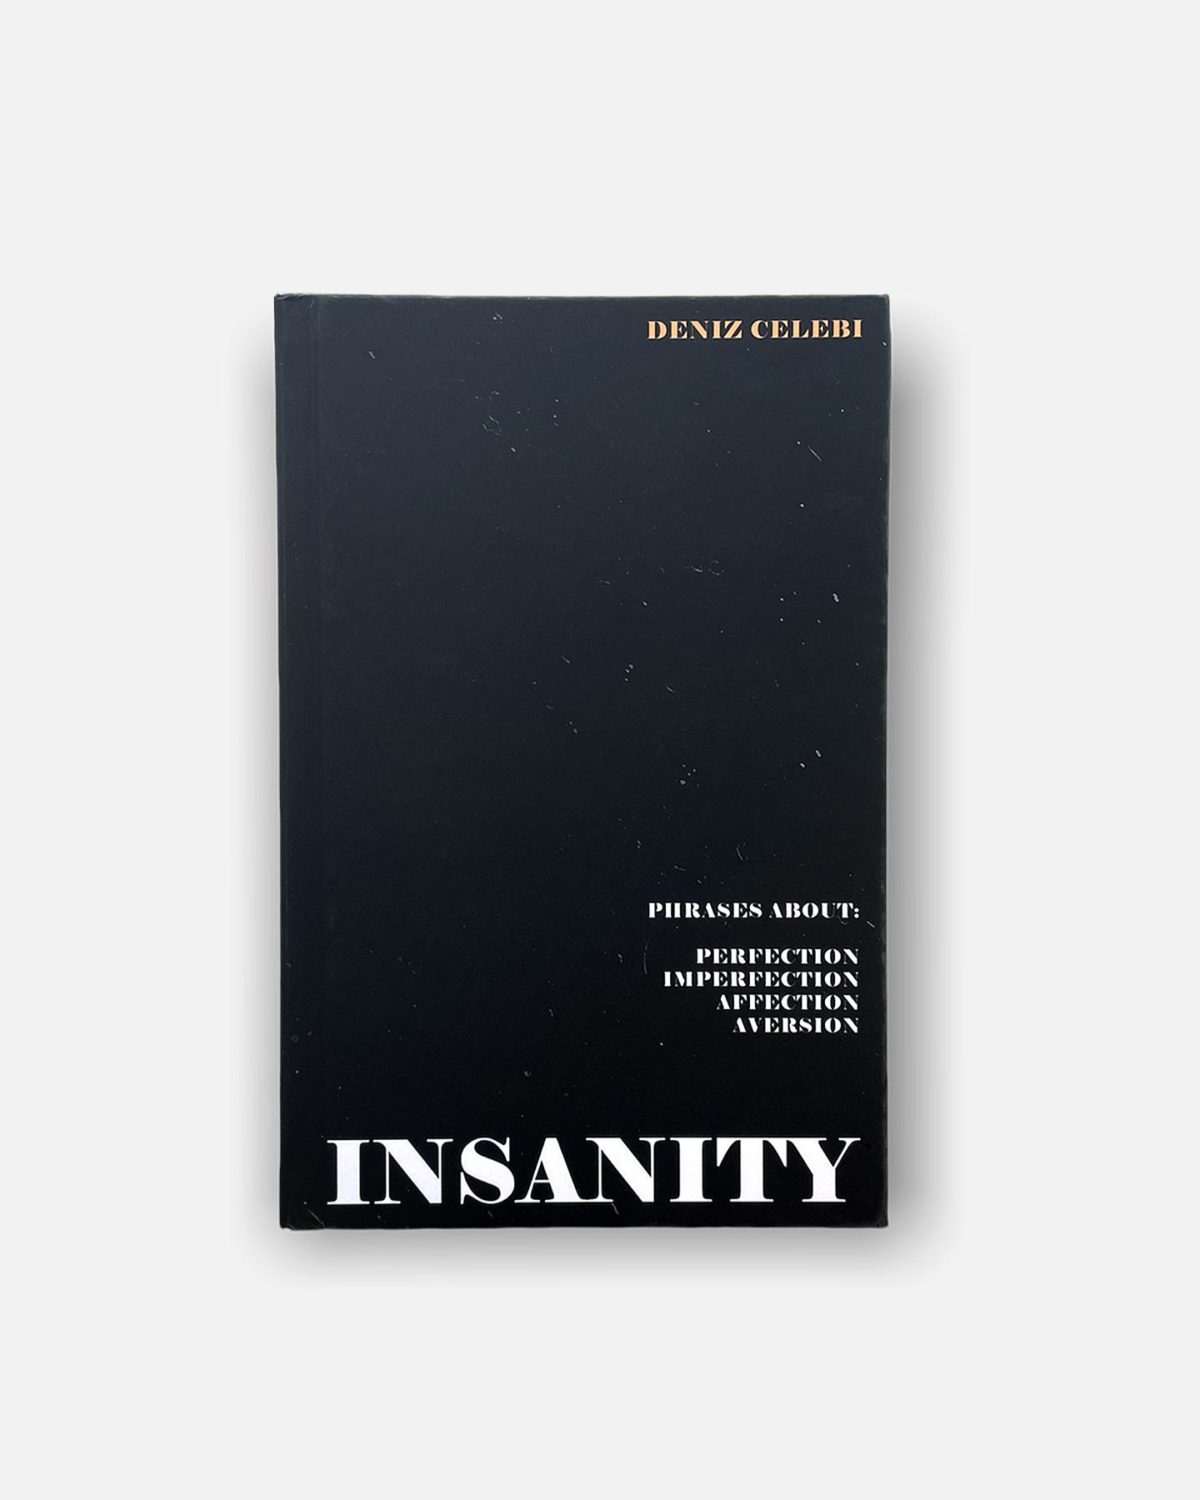 Insanity Poetry Book by Deniz Celebi